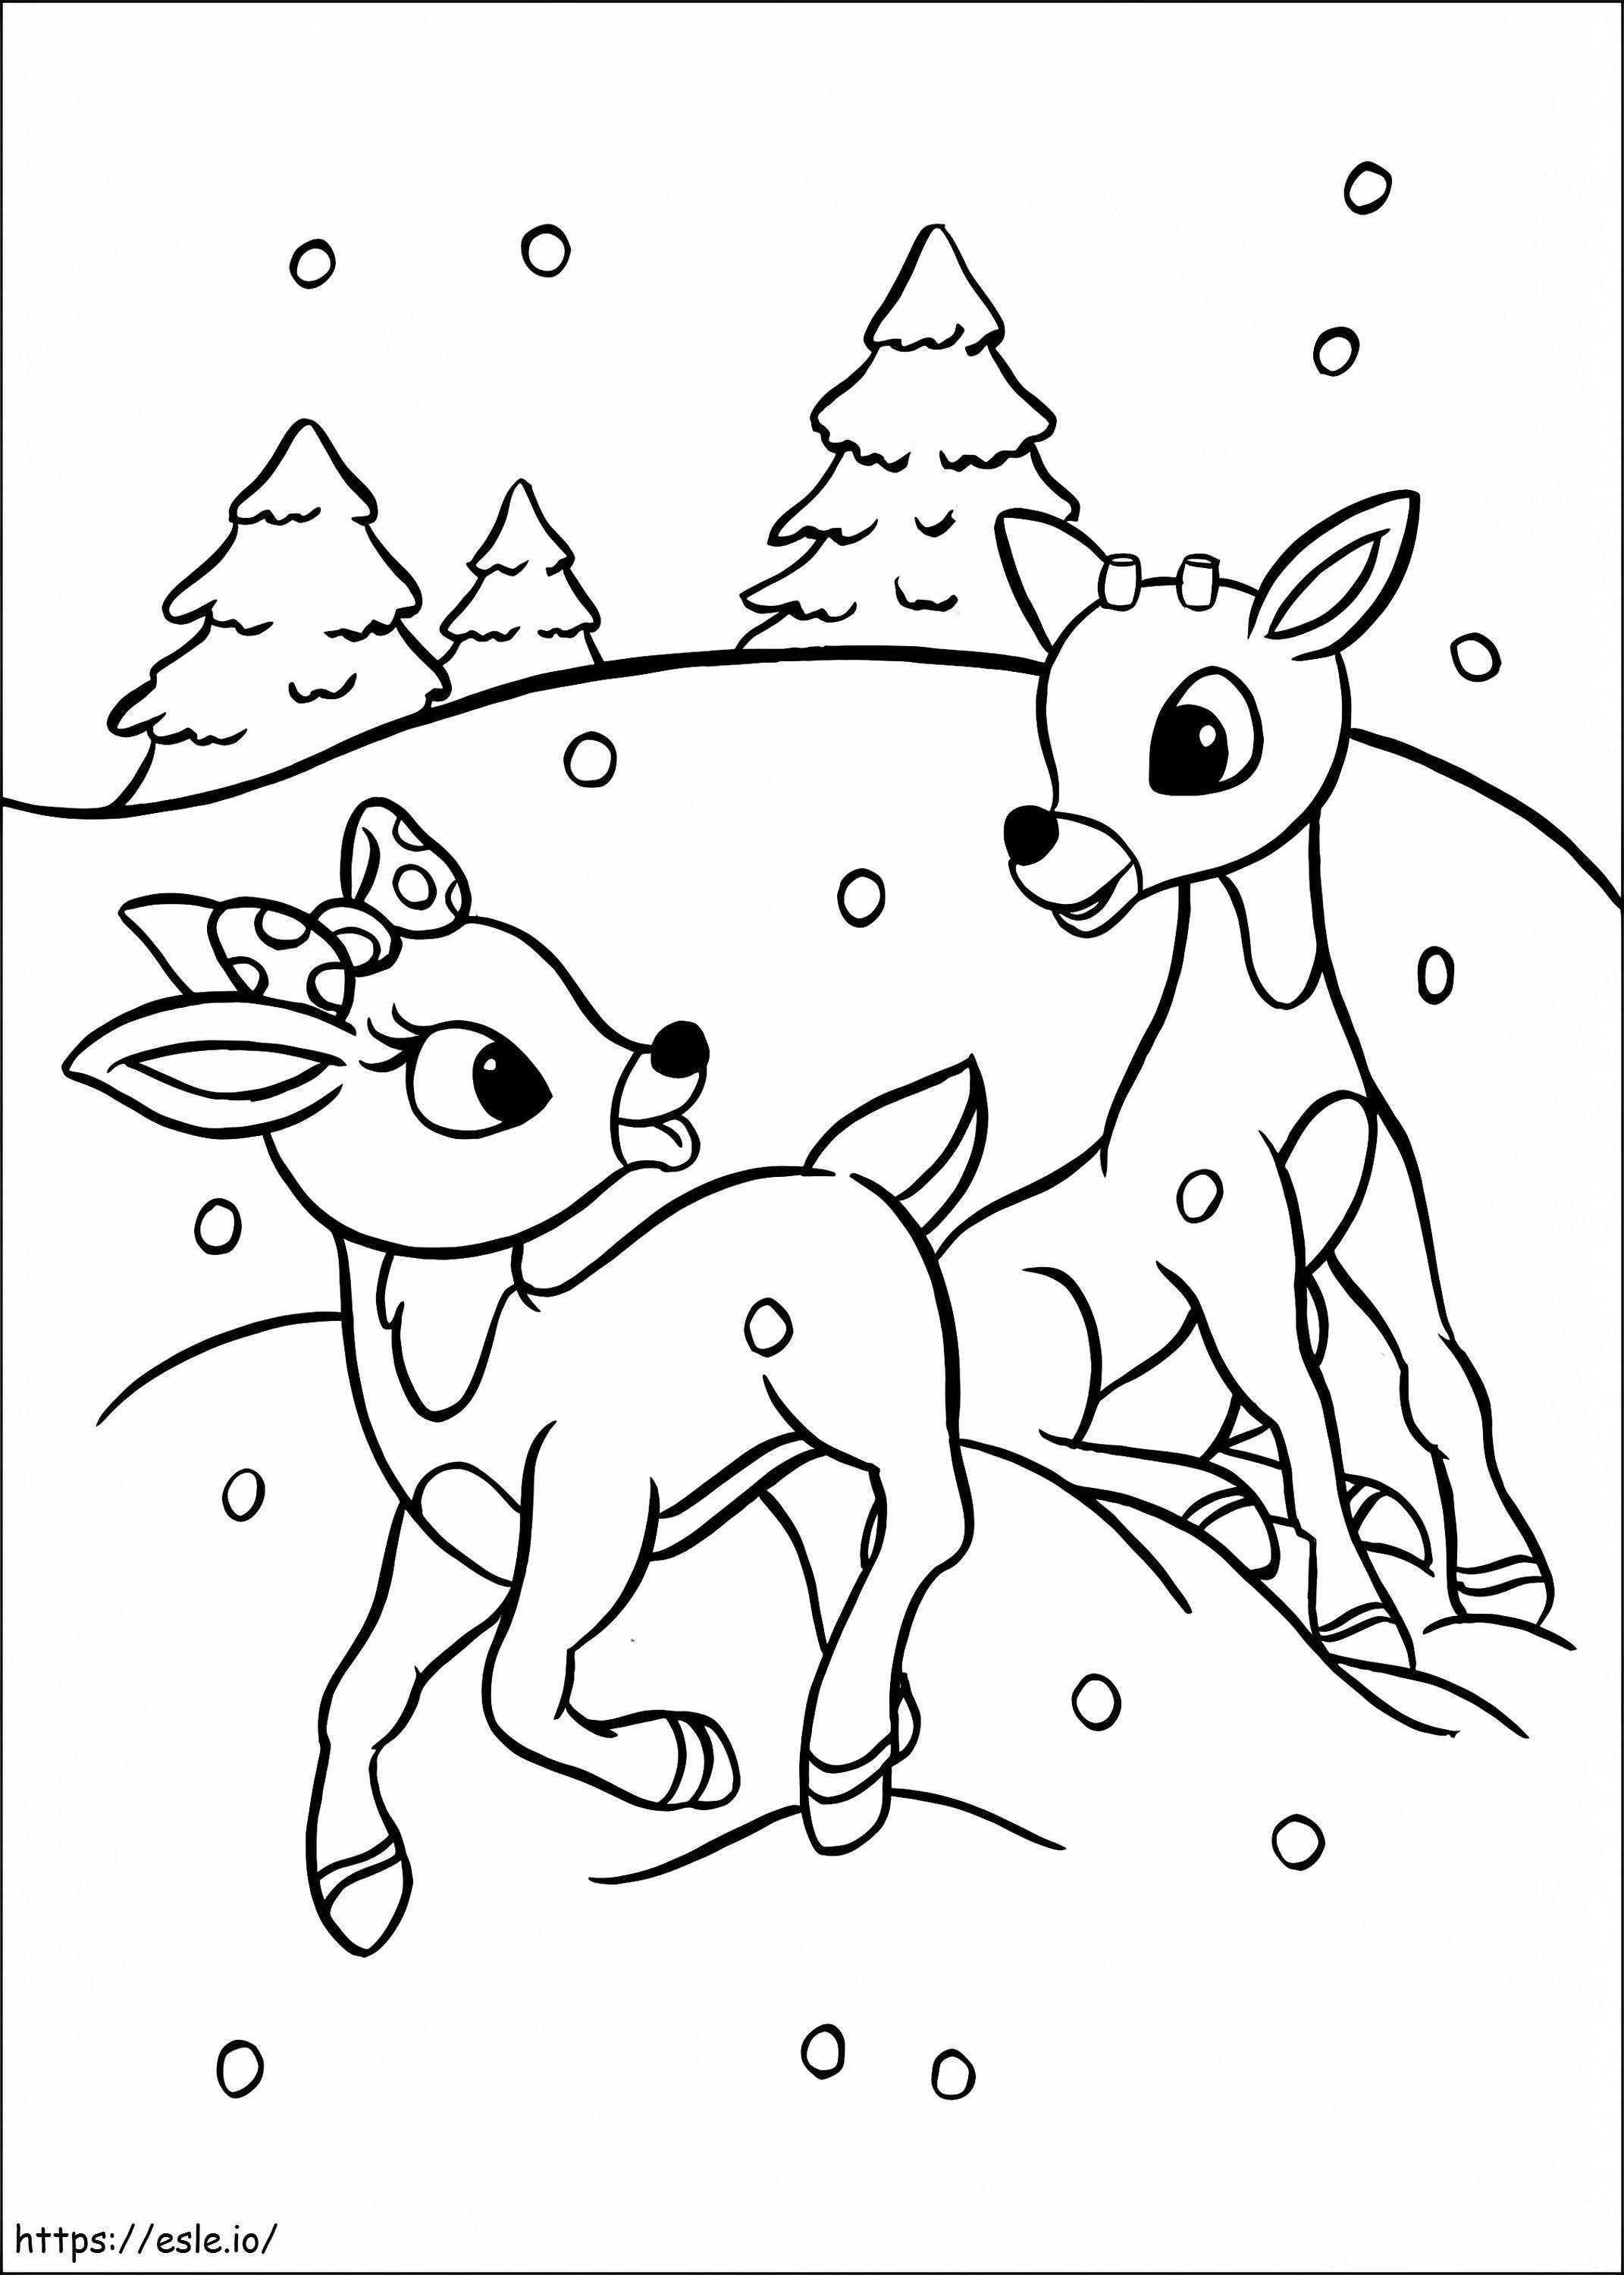 Rudolph mit Clarice ausmalbilder